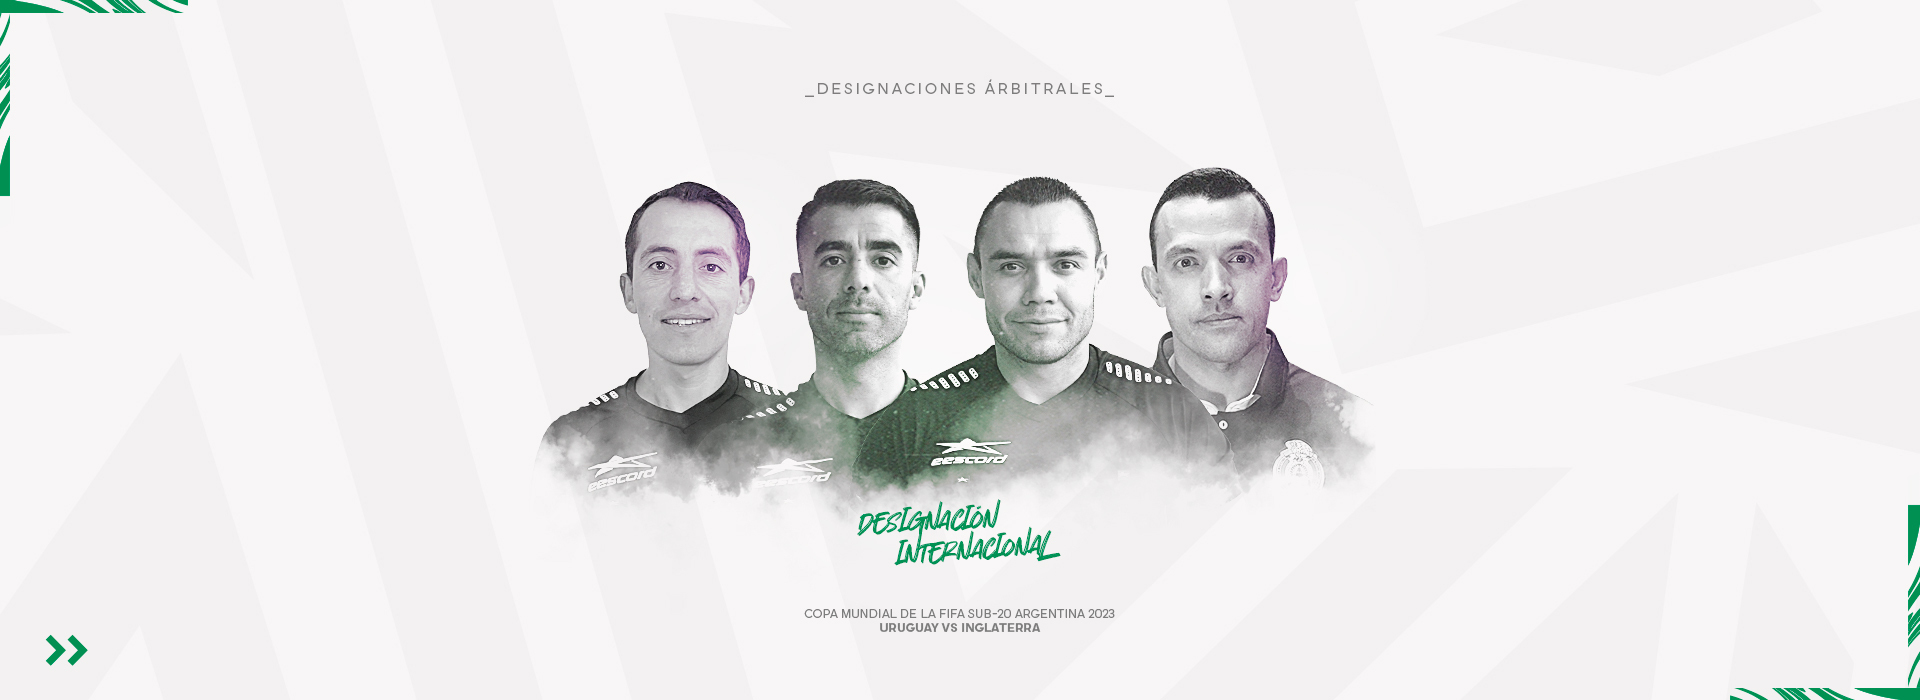 Nueva designación para árbitros mexicanos en la Copa Mundial Sub-20 de la FIFA Argentina 2023